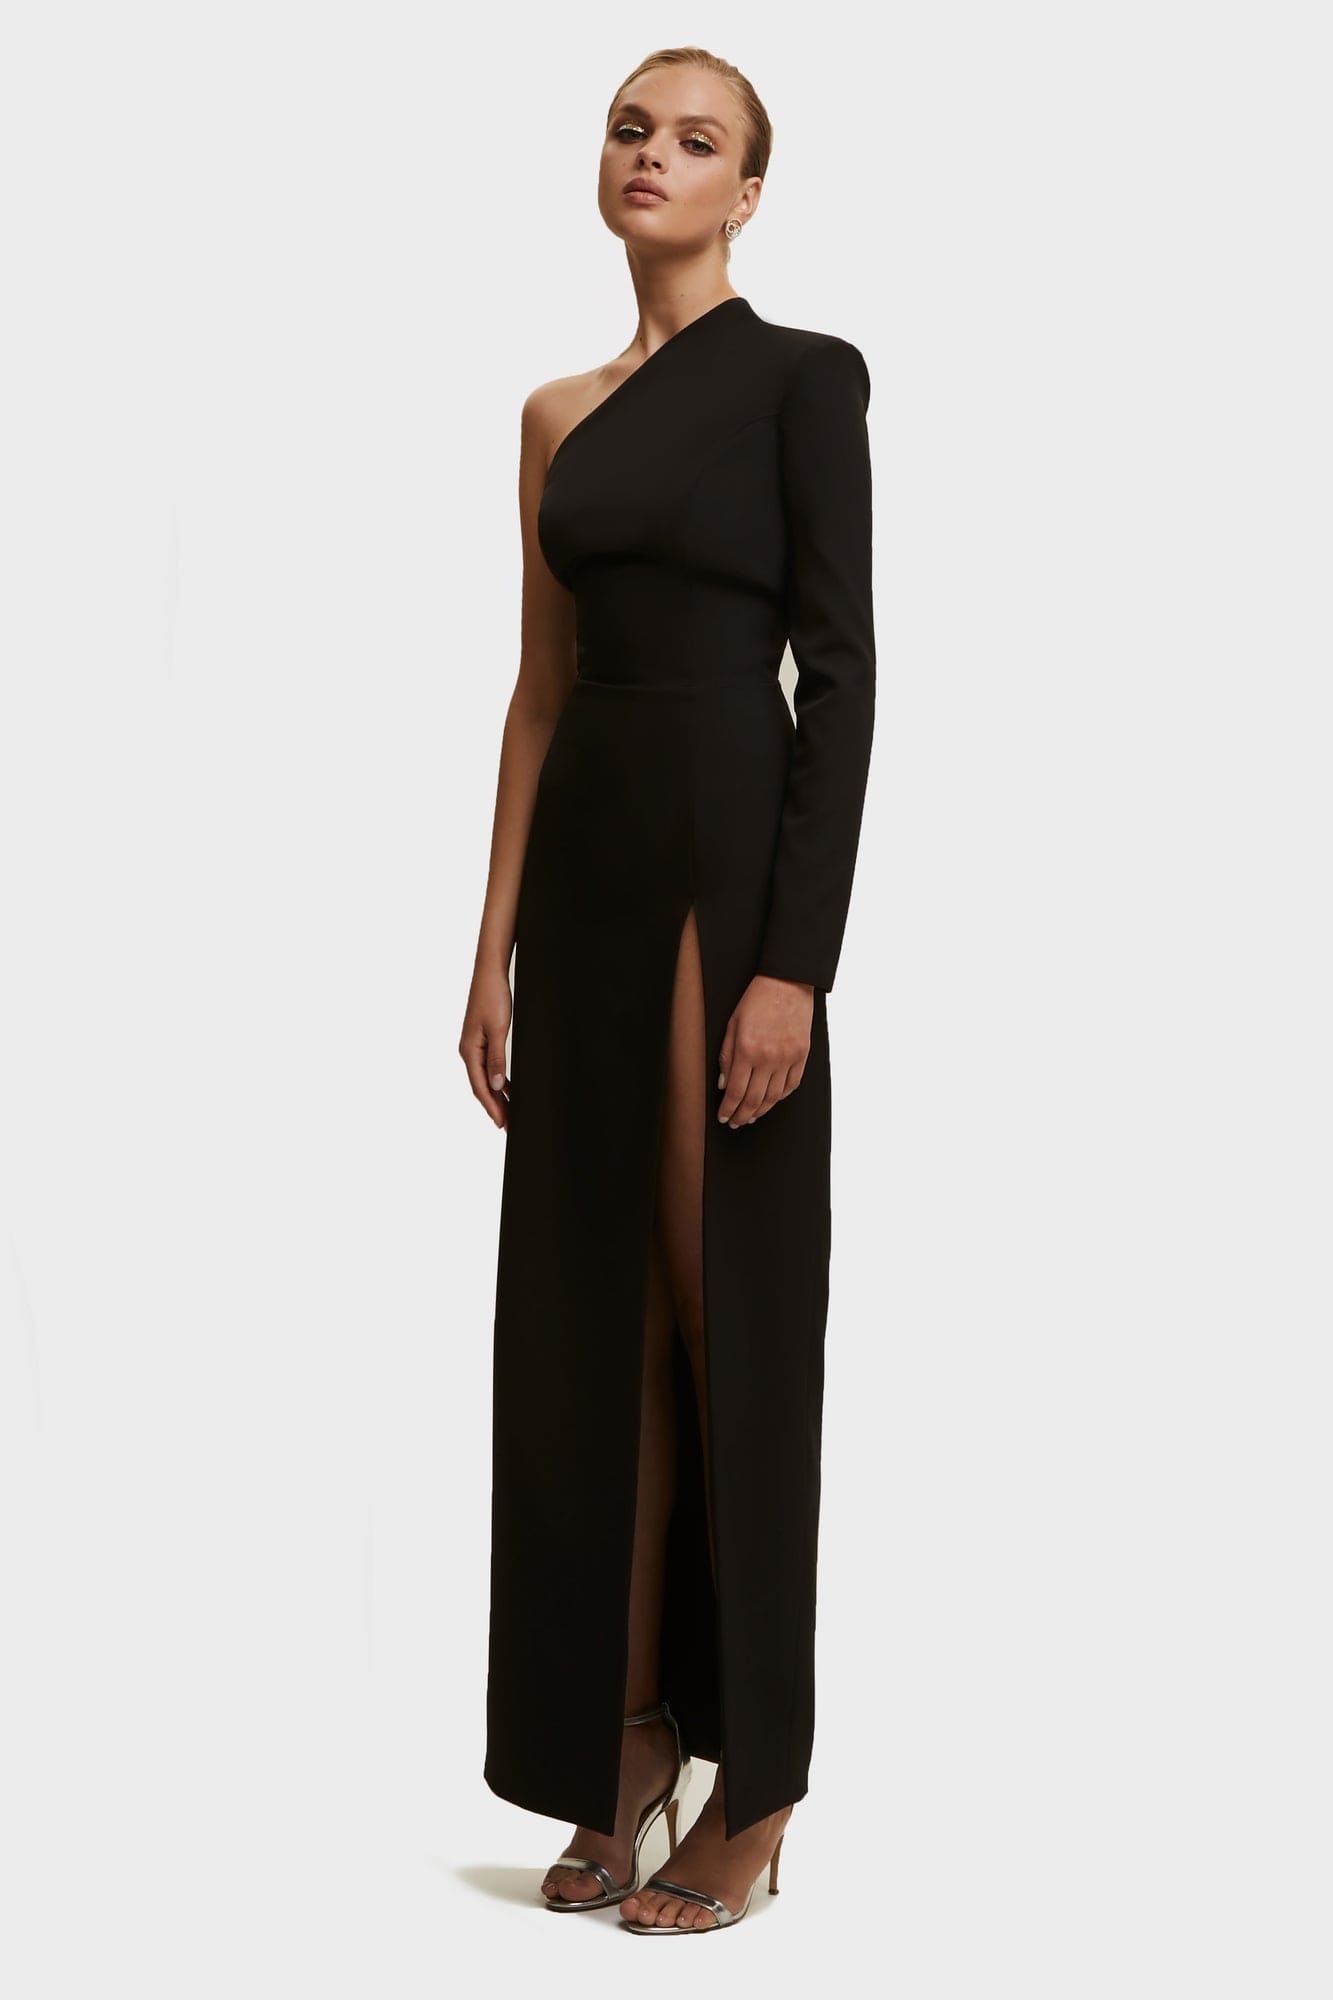 Black Long-sleeved dress with sharp shoulder cut